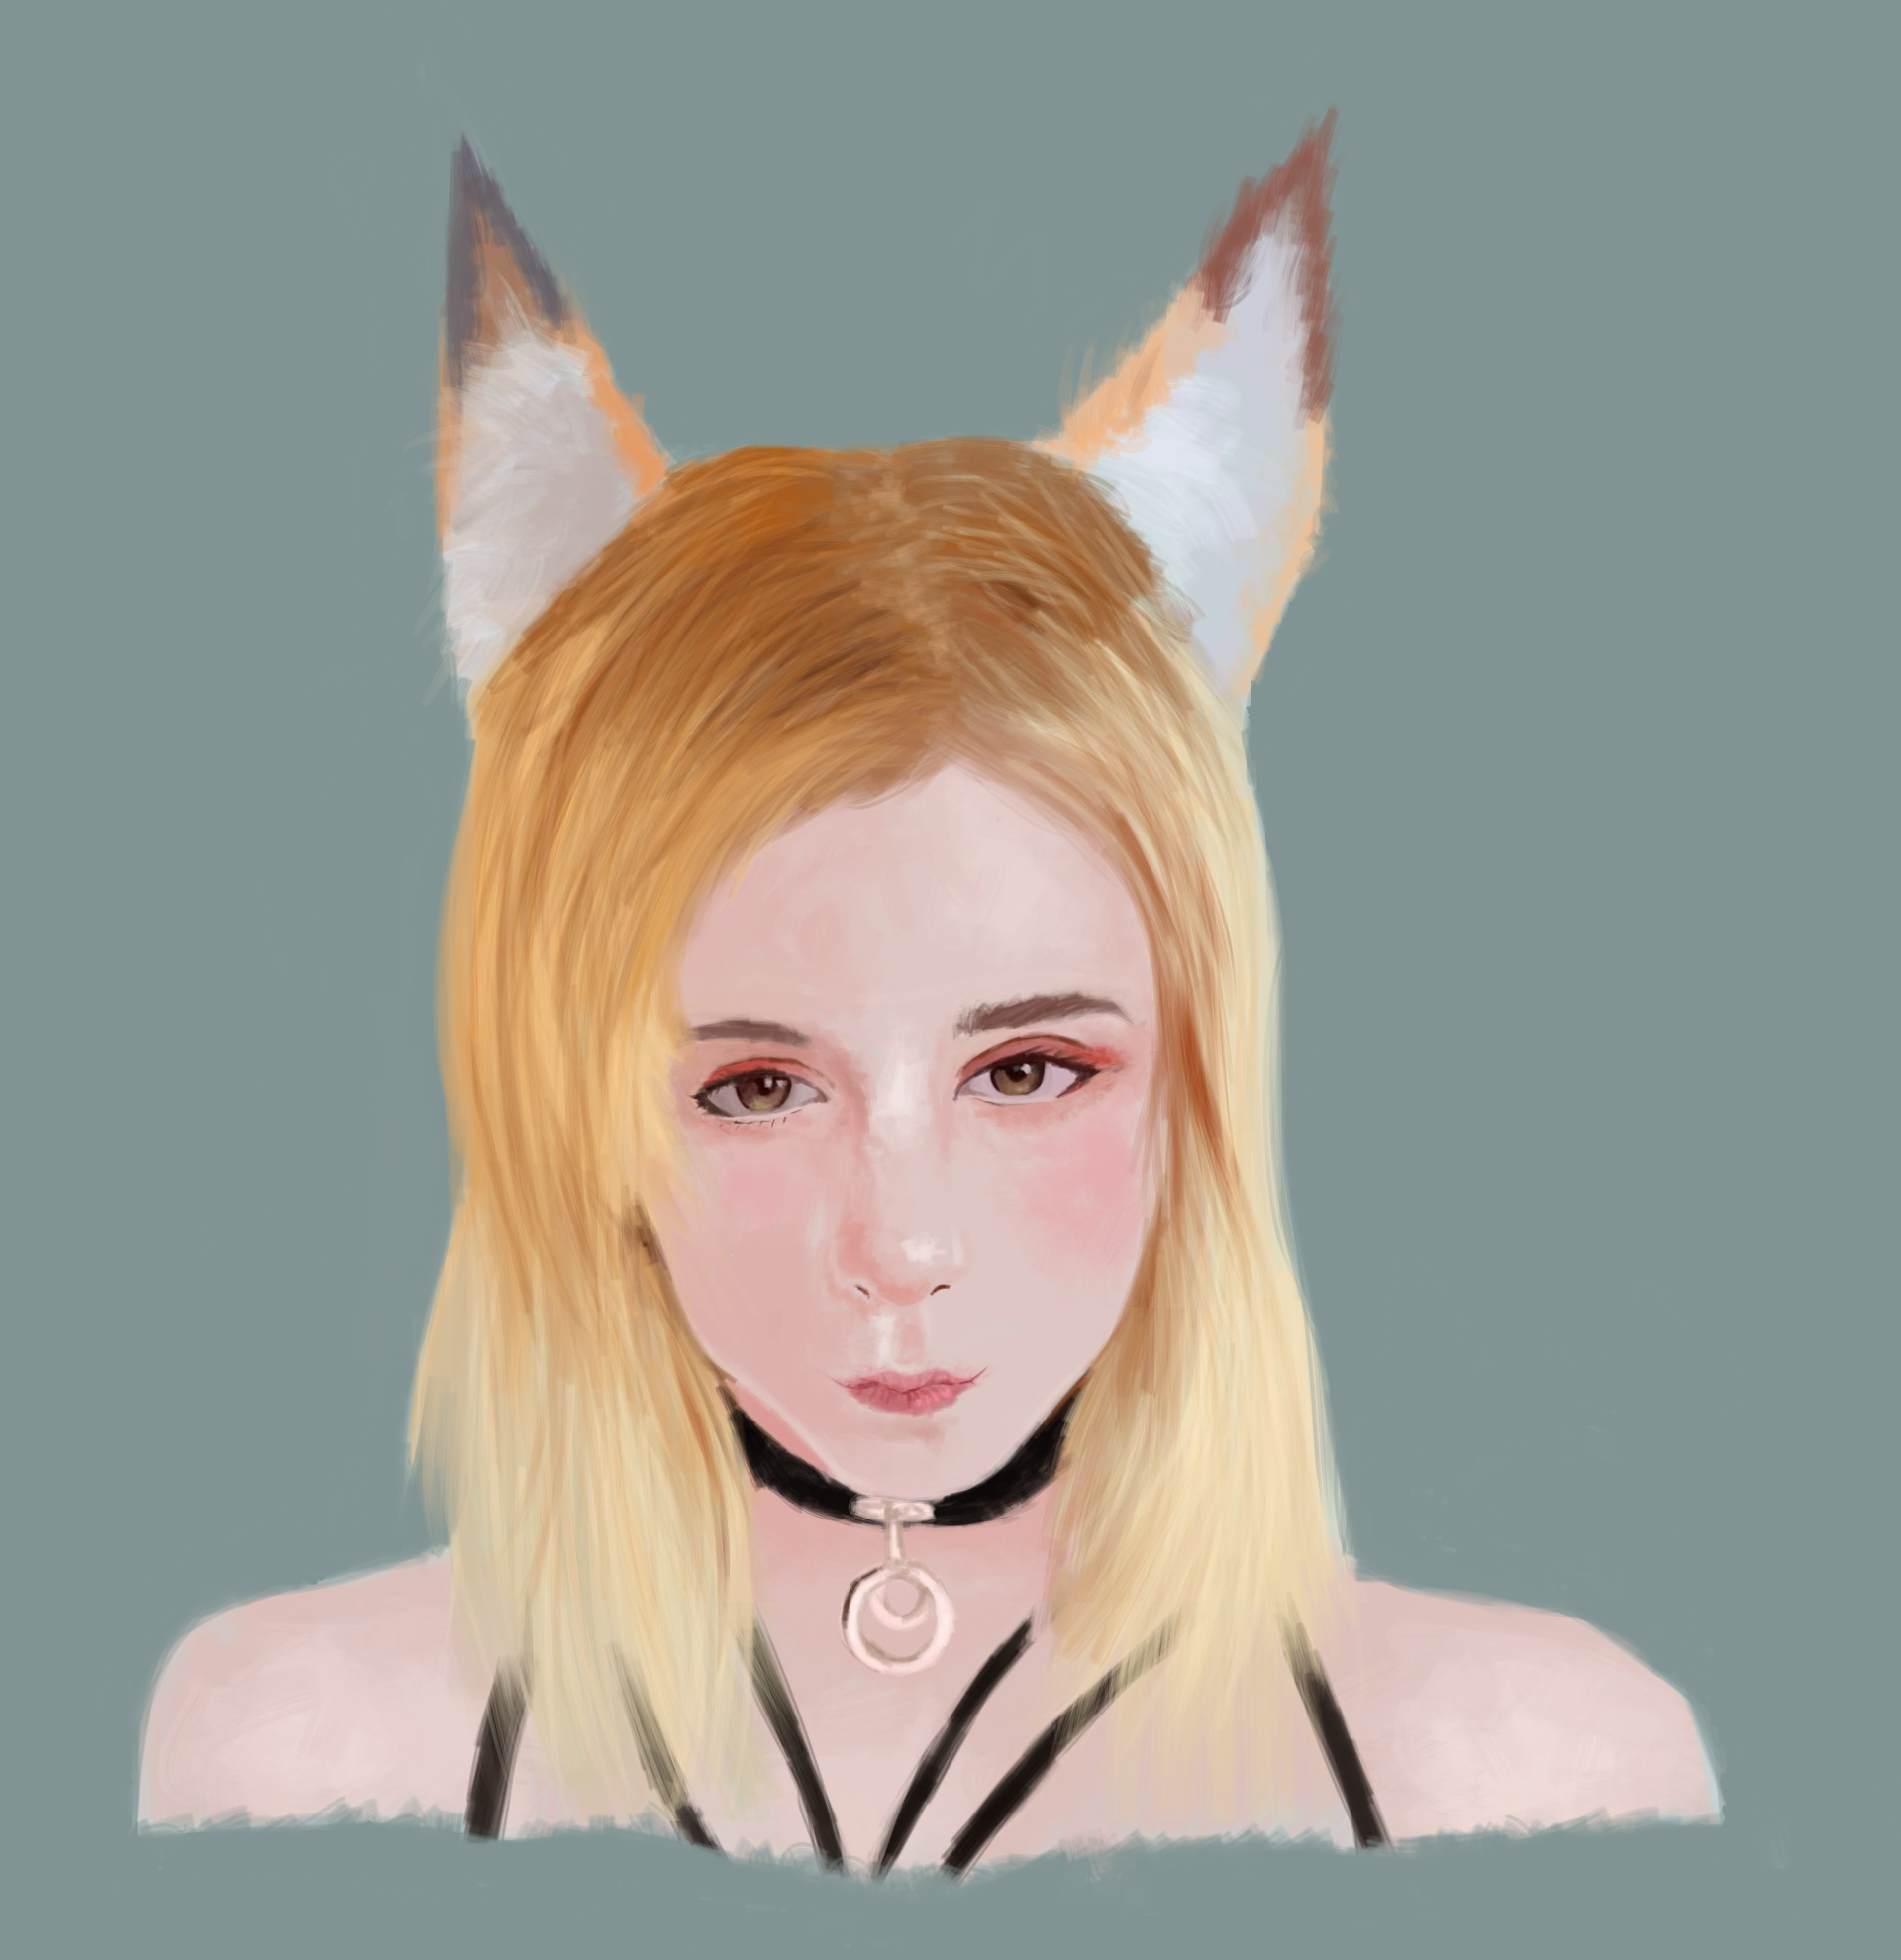 Sweetie Fox study/ portrait